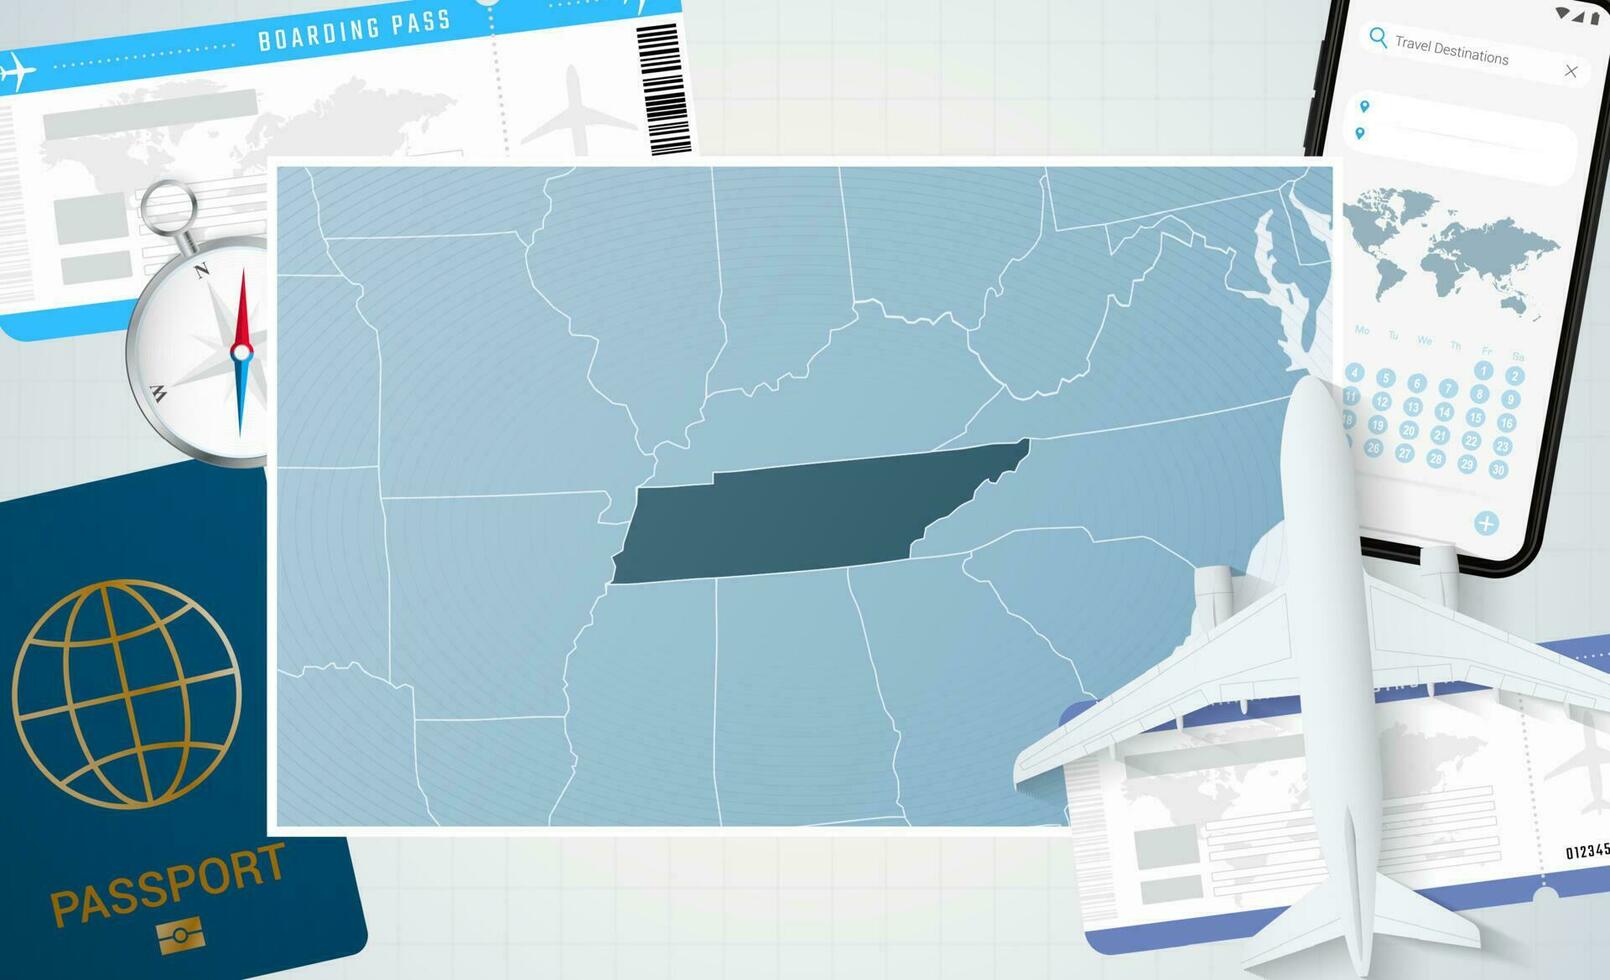 reis naar Tennessee, illustratie met een kaart van Tennessee. achtergrond met vliegtuig, cel telefoon, paspoort, kompas en kaartjes. vector